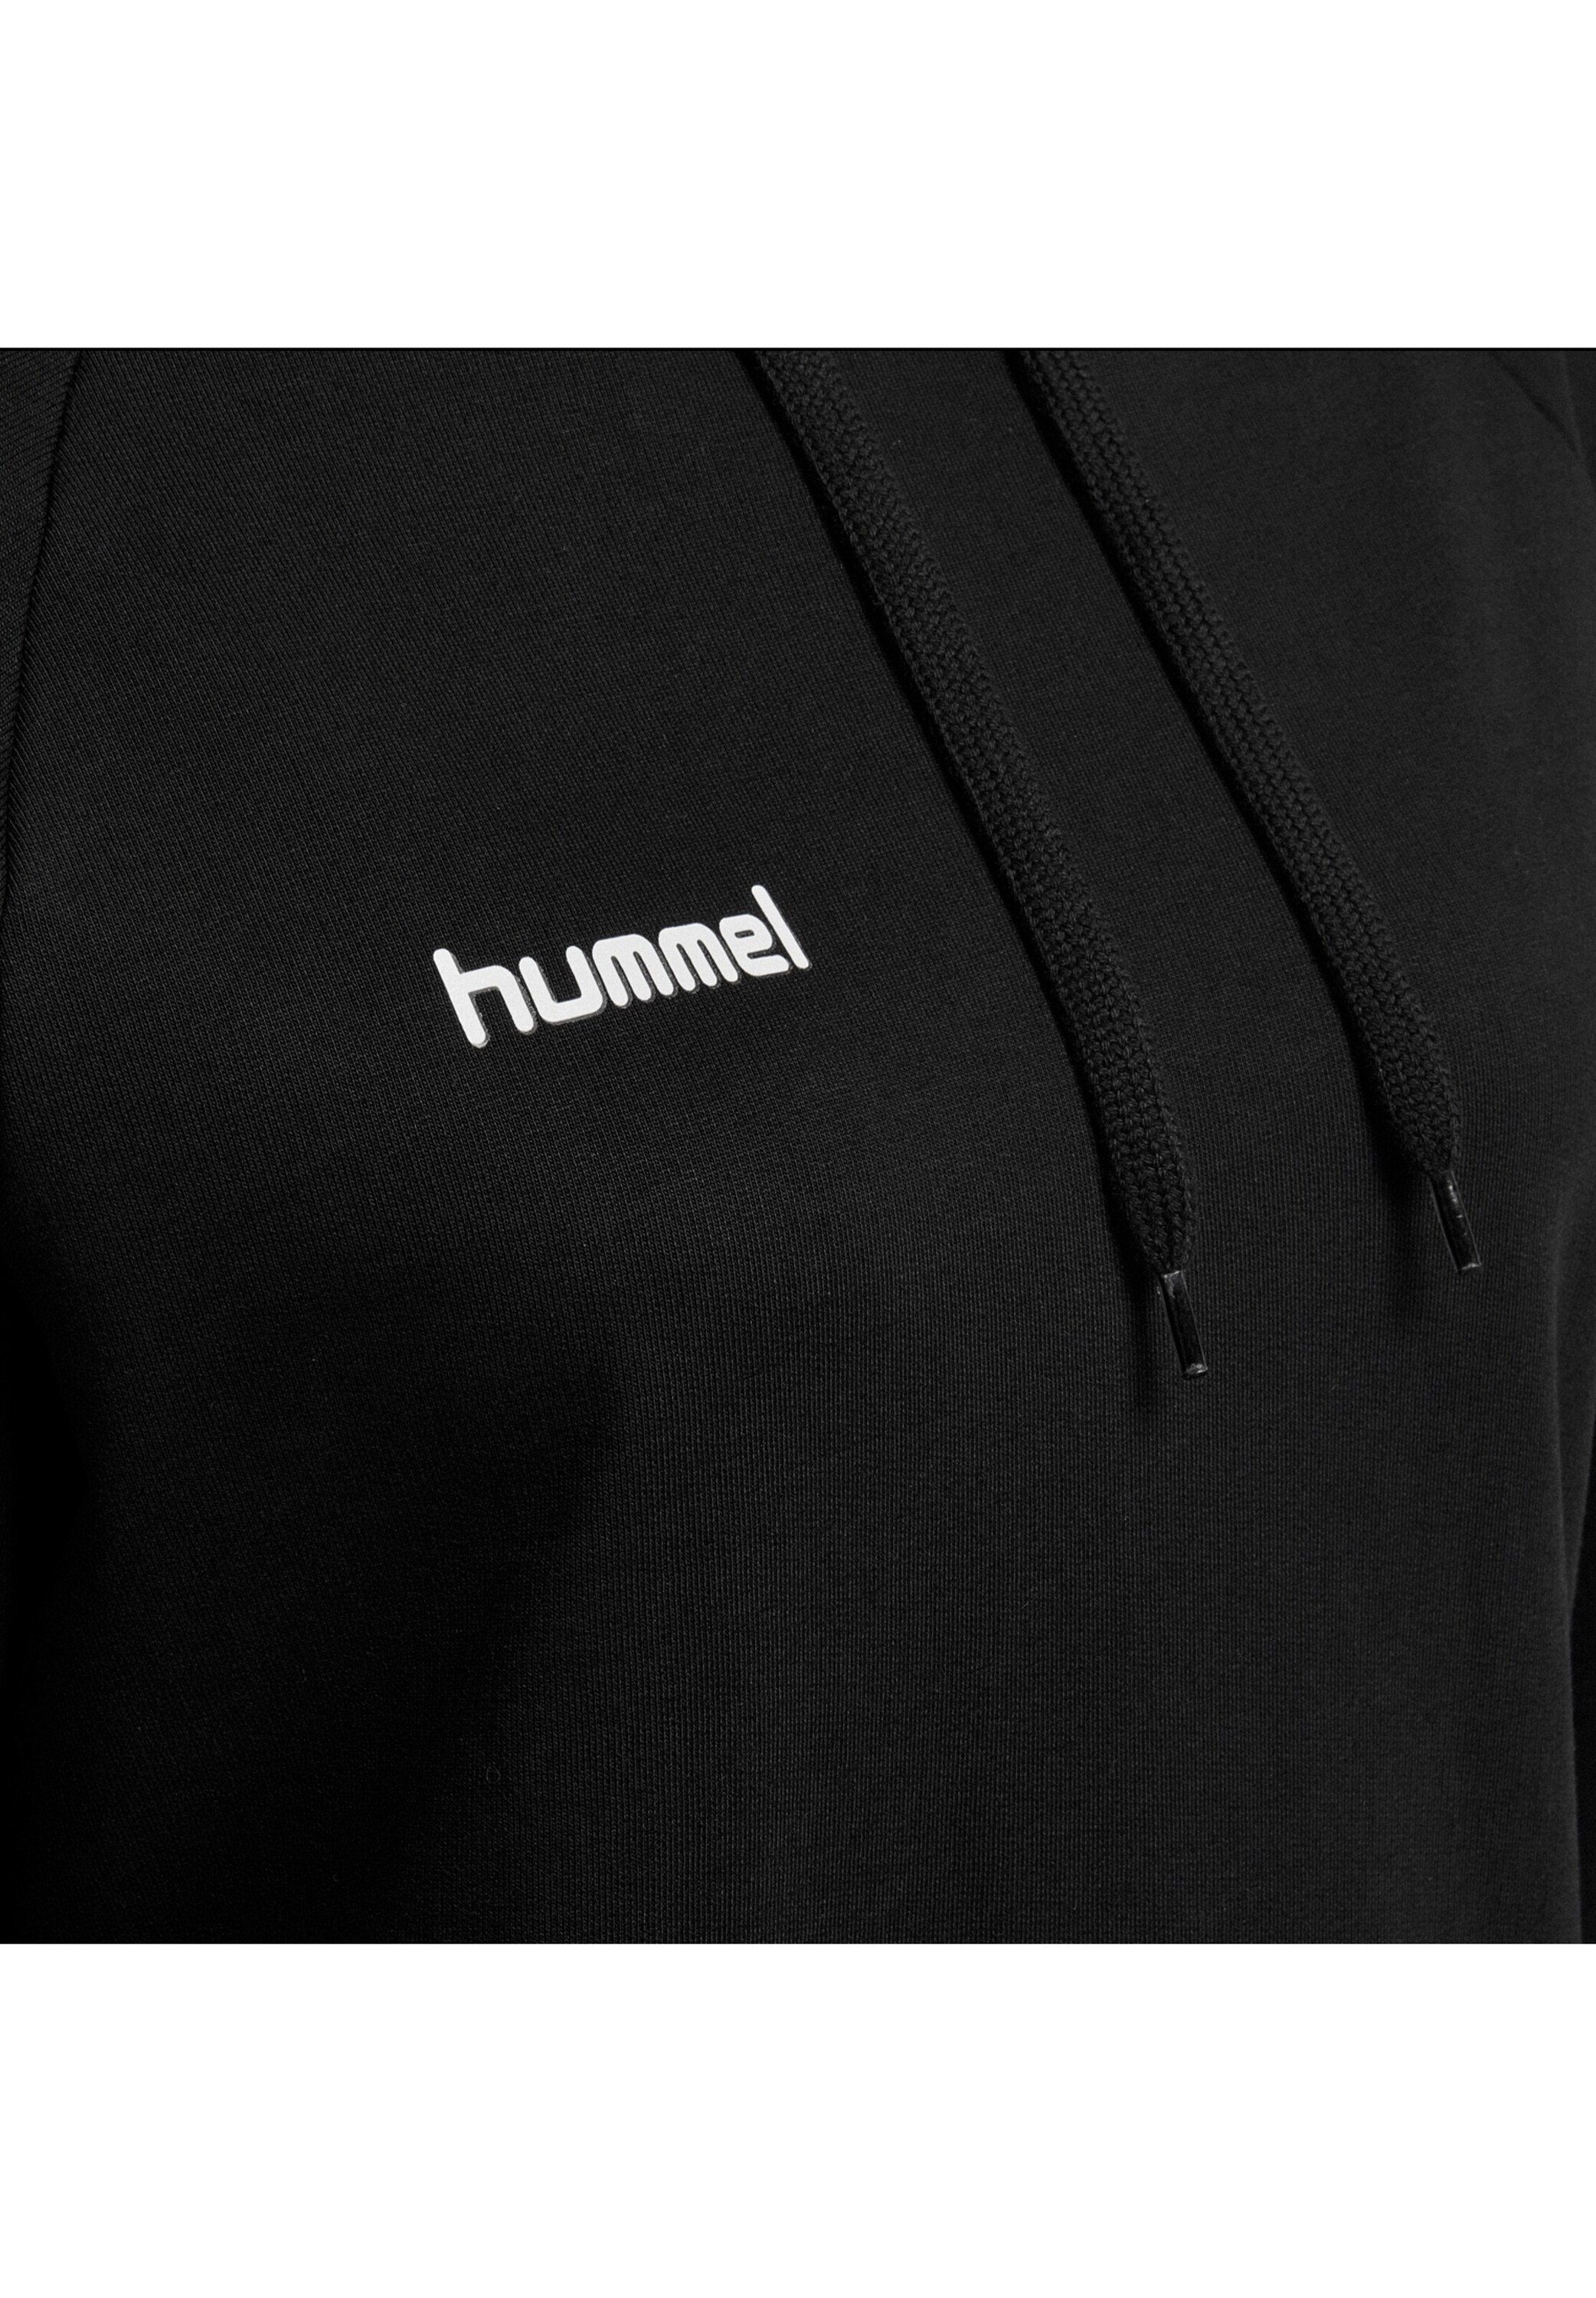 Sweatshirt Plain/ohne Schwarz hummel (1-tlg) Details